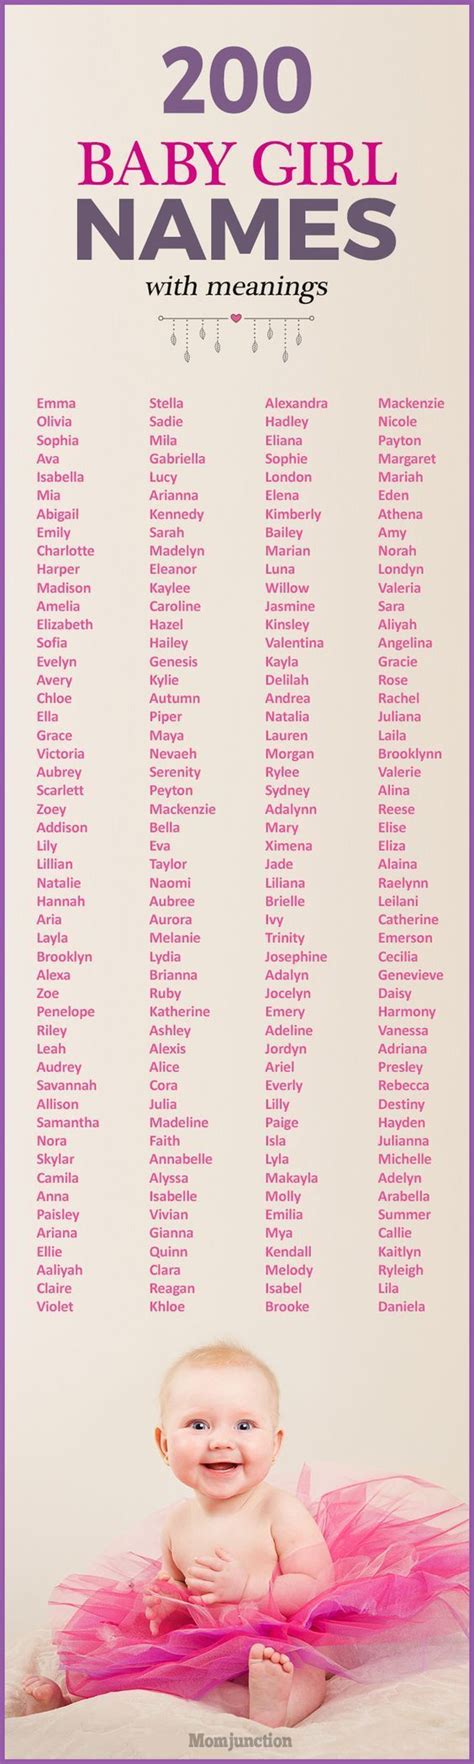 Lista Completa De Nombres En Ingles Para Ninas Y Su Significado Images